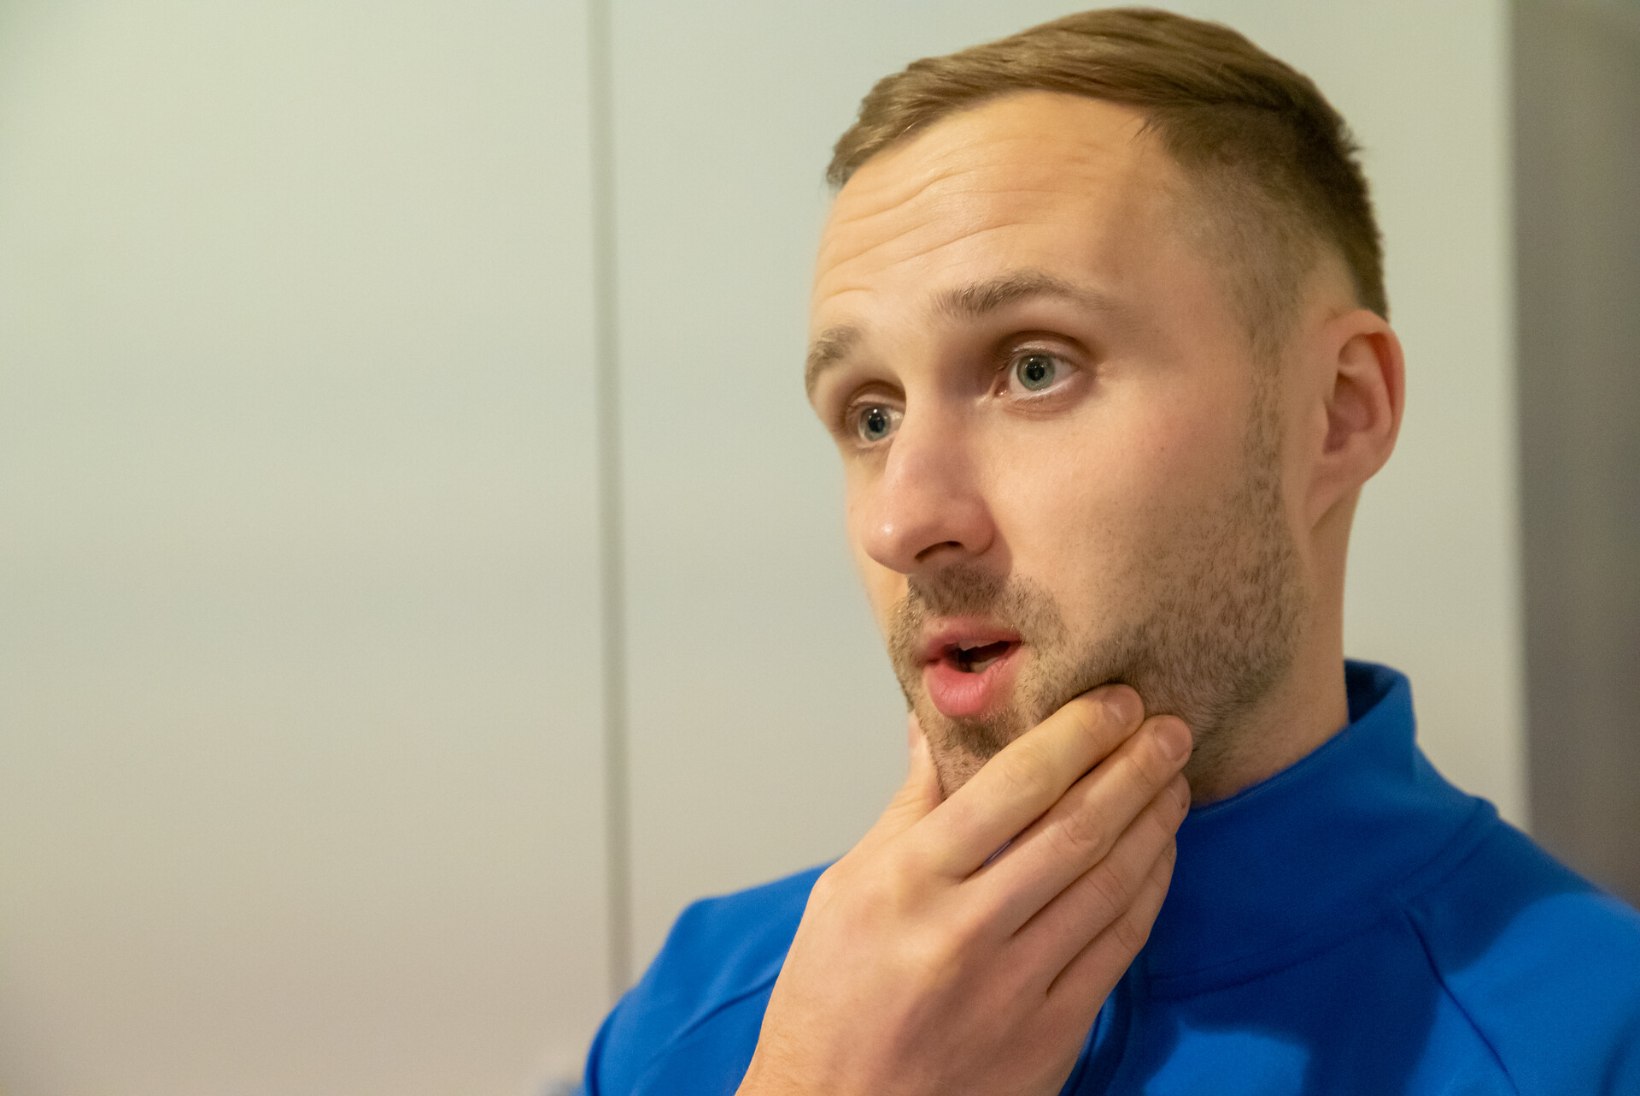 Eesti jalgpallikoondislane pani Ukraina toetuseks oksjonile kastitäie enda pruulitud väga erilist kesvamärjukest